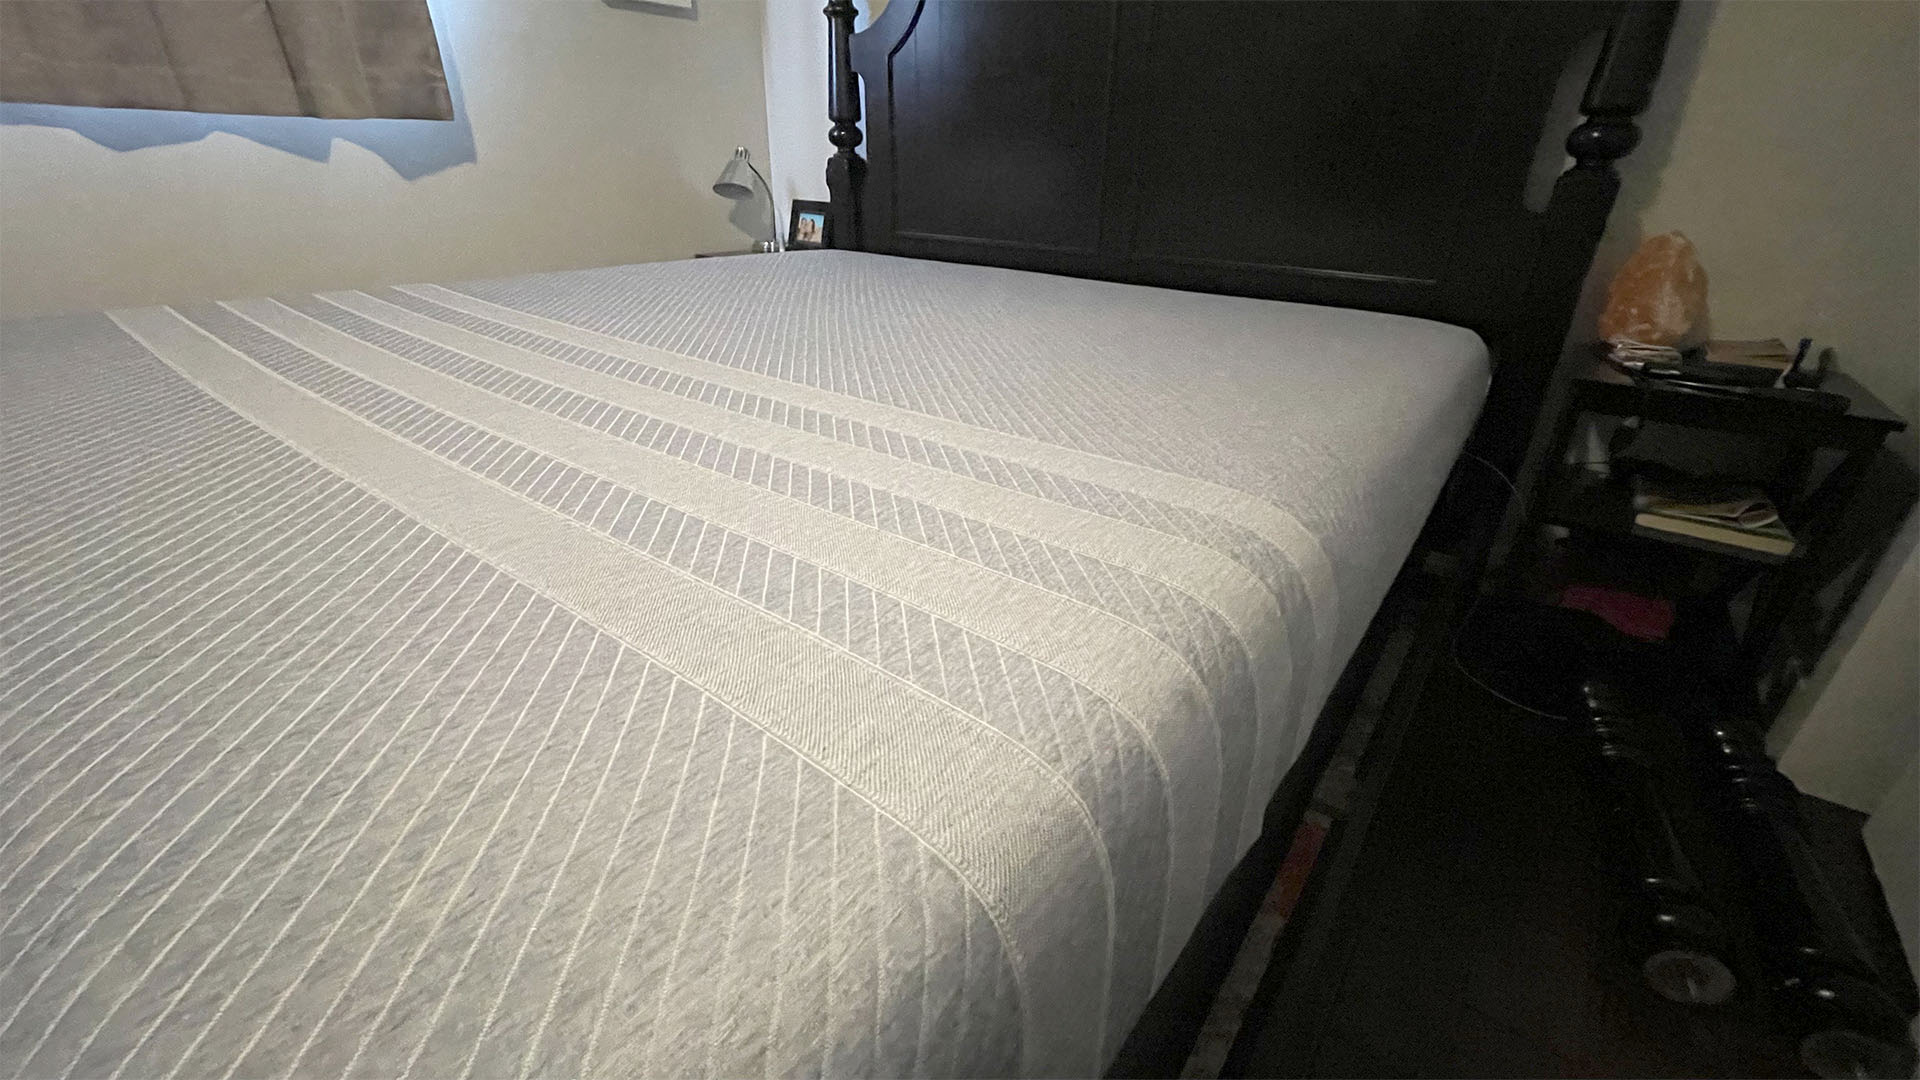 Leesa Studio mattress in reviewer's bedroom